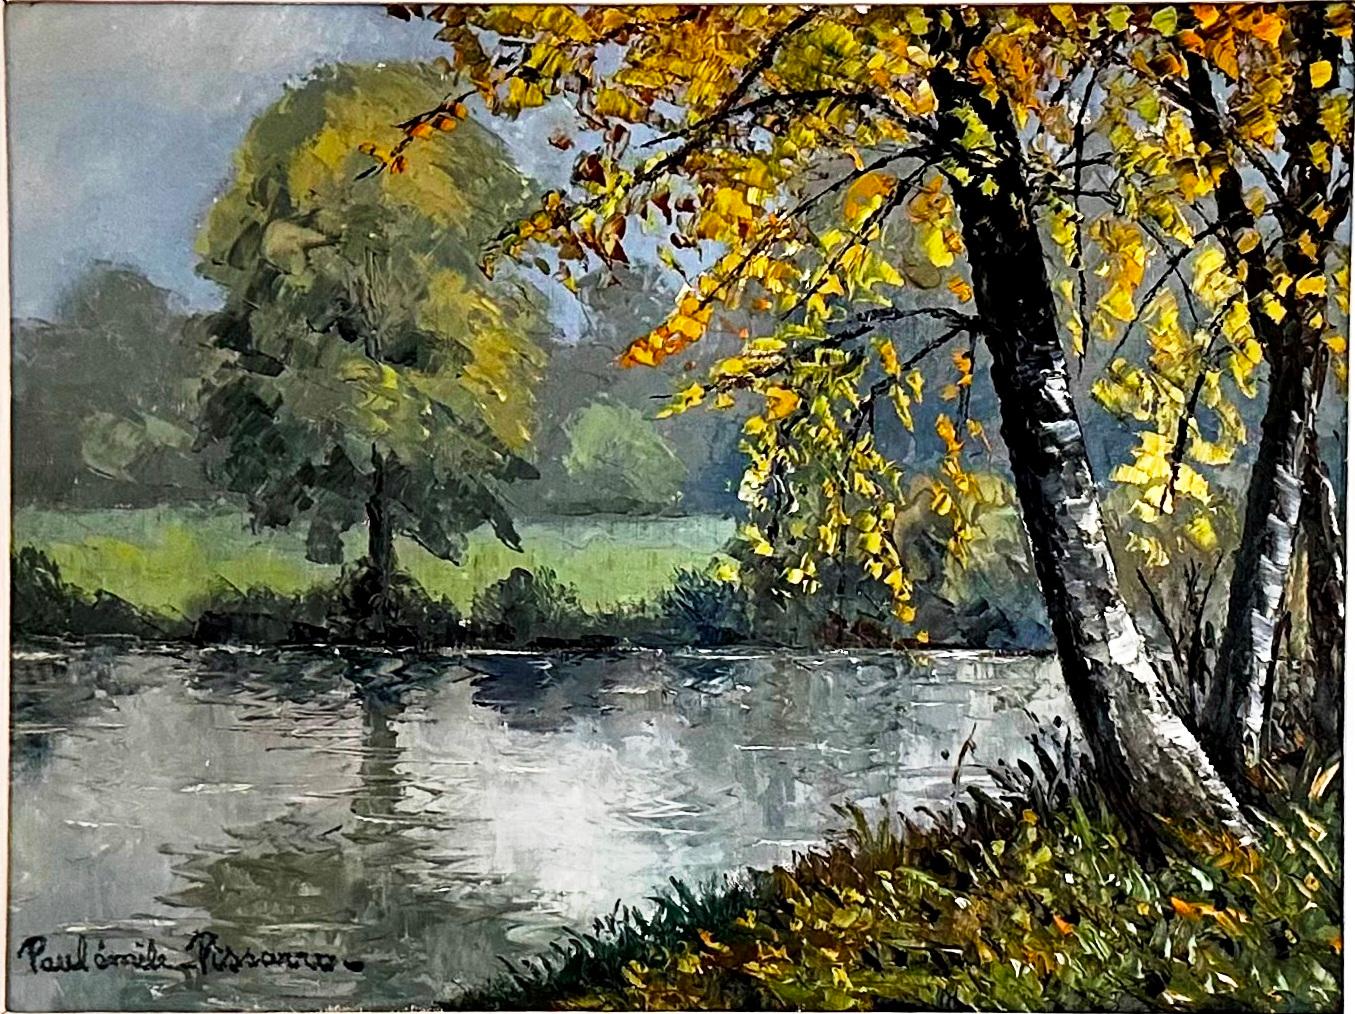  Novembre au bord de l’eau  - Painting by Paul Emile Pissarro